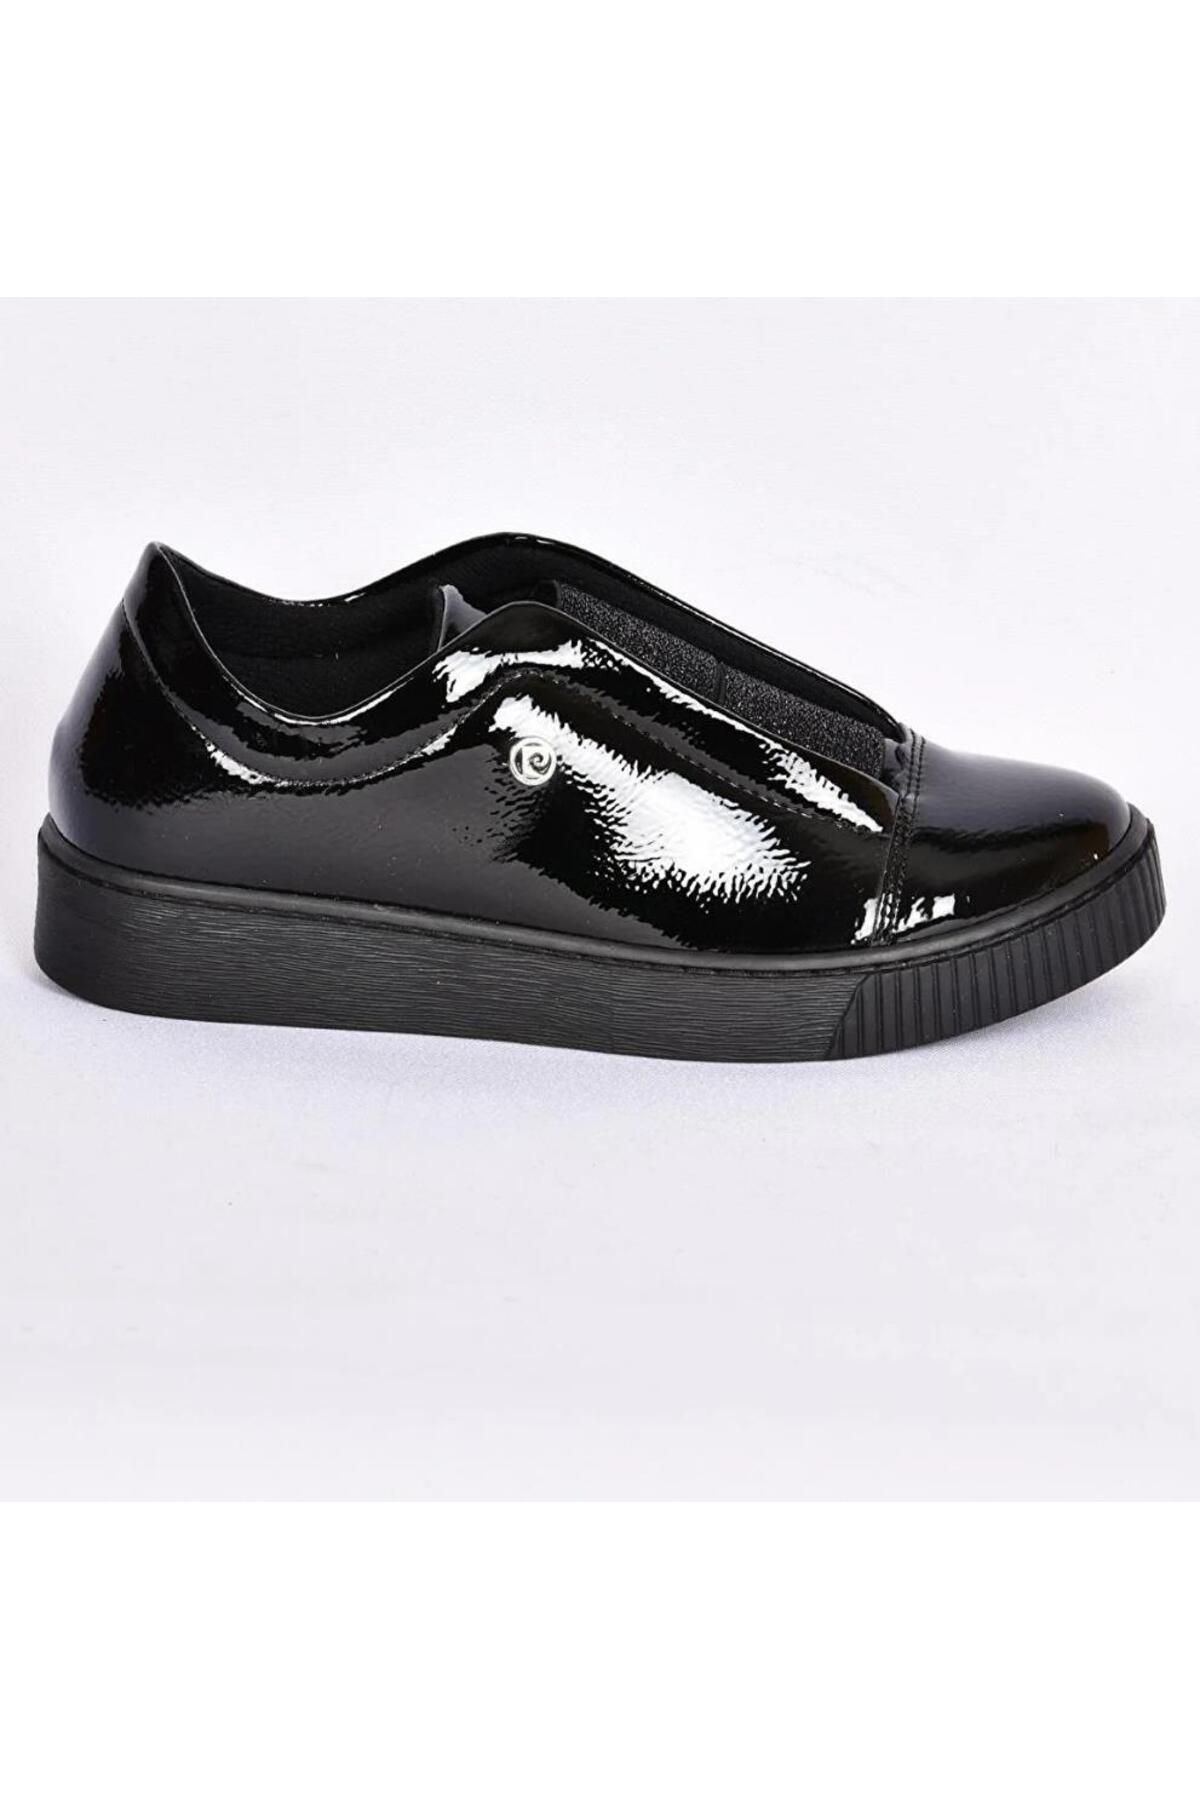 Pierre Cardin Pc52143 Kadın Günlük Casual Ayakkabı